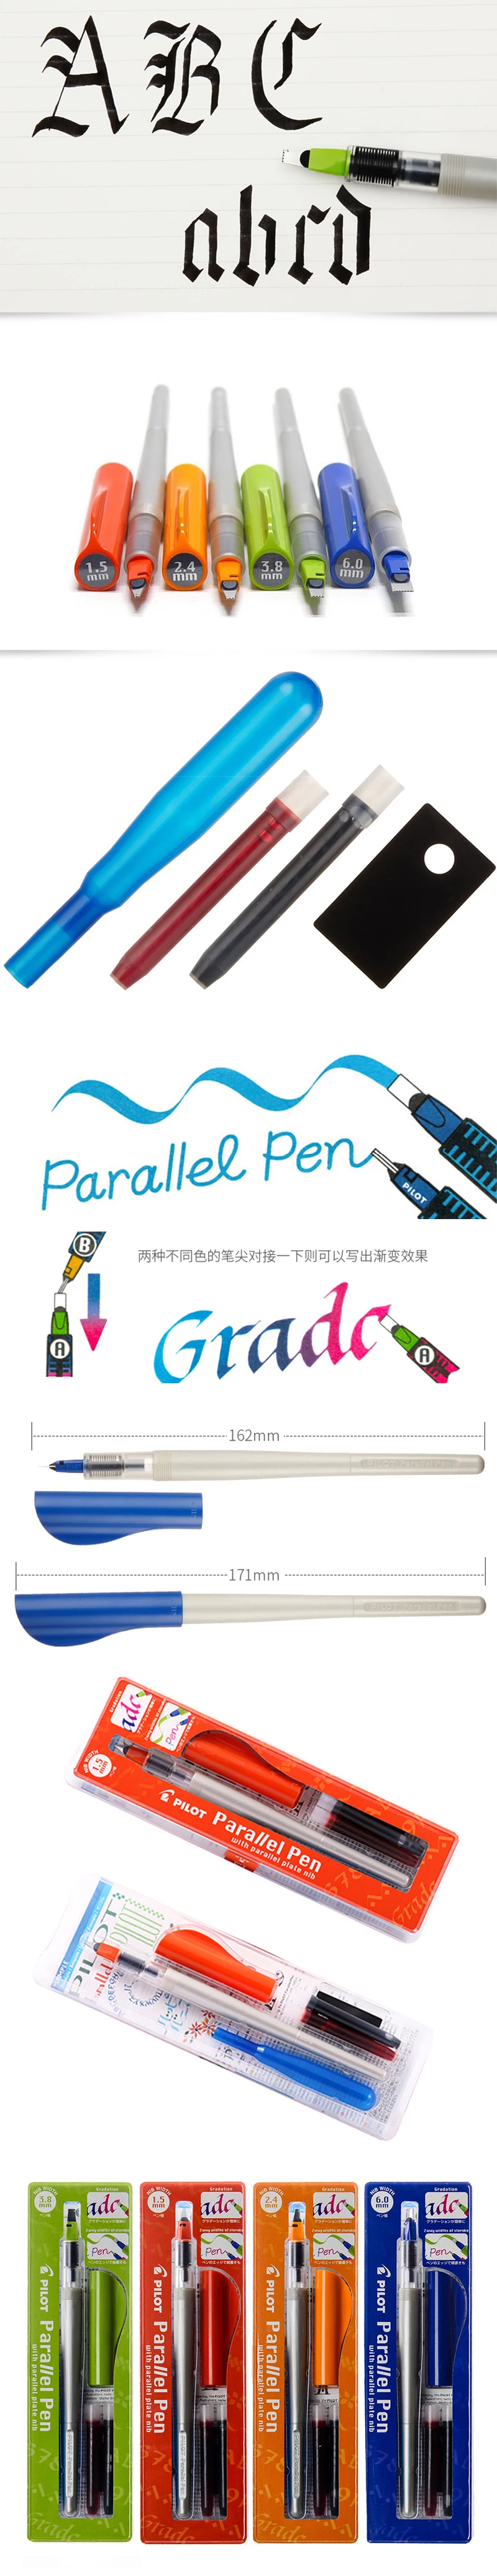 Японский импортный пилот FP3-SS 1,5 2,4 3,8 6,0 мм параллельная ручка с насадкой в виде утки специальное искусство готический Цветок шрифт английская каллиграфия ручка